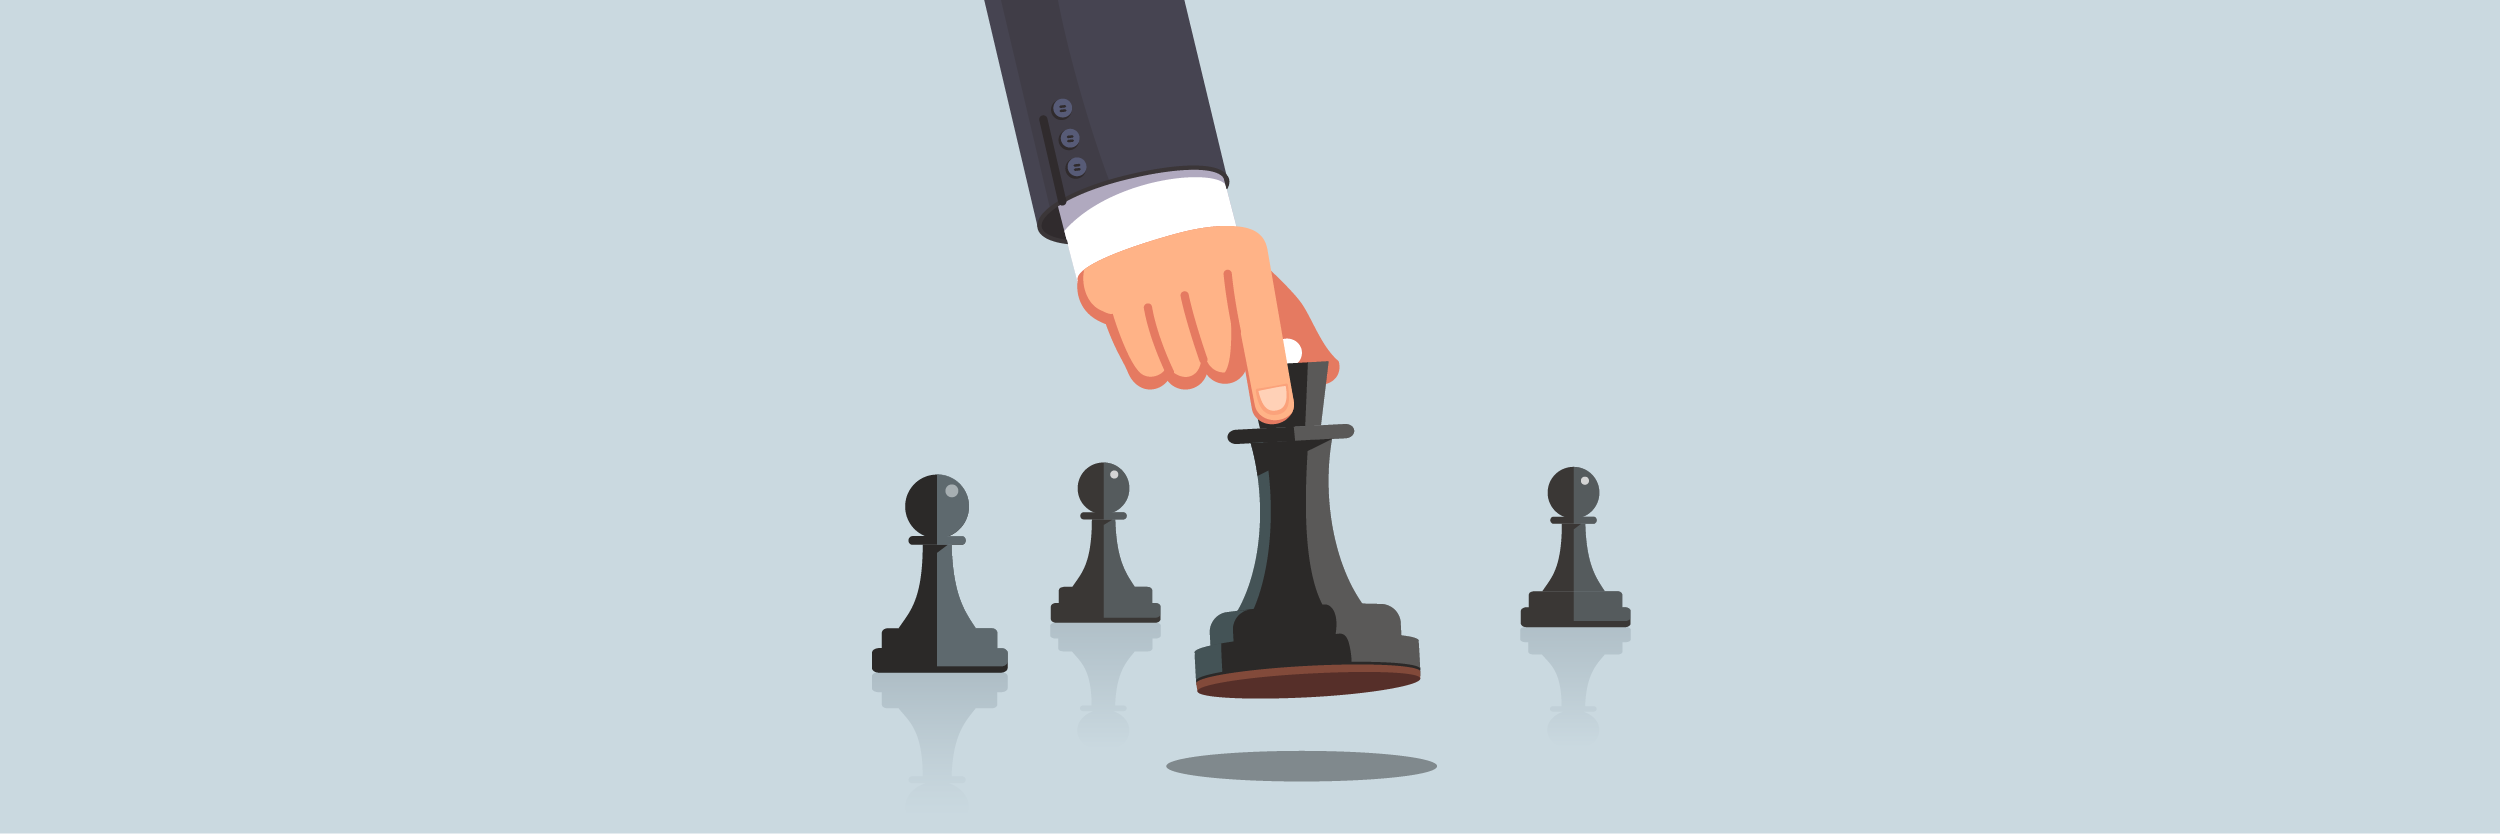 Blog Vindi - O xadrez tem muito a te ensinar sobre o seu negócio